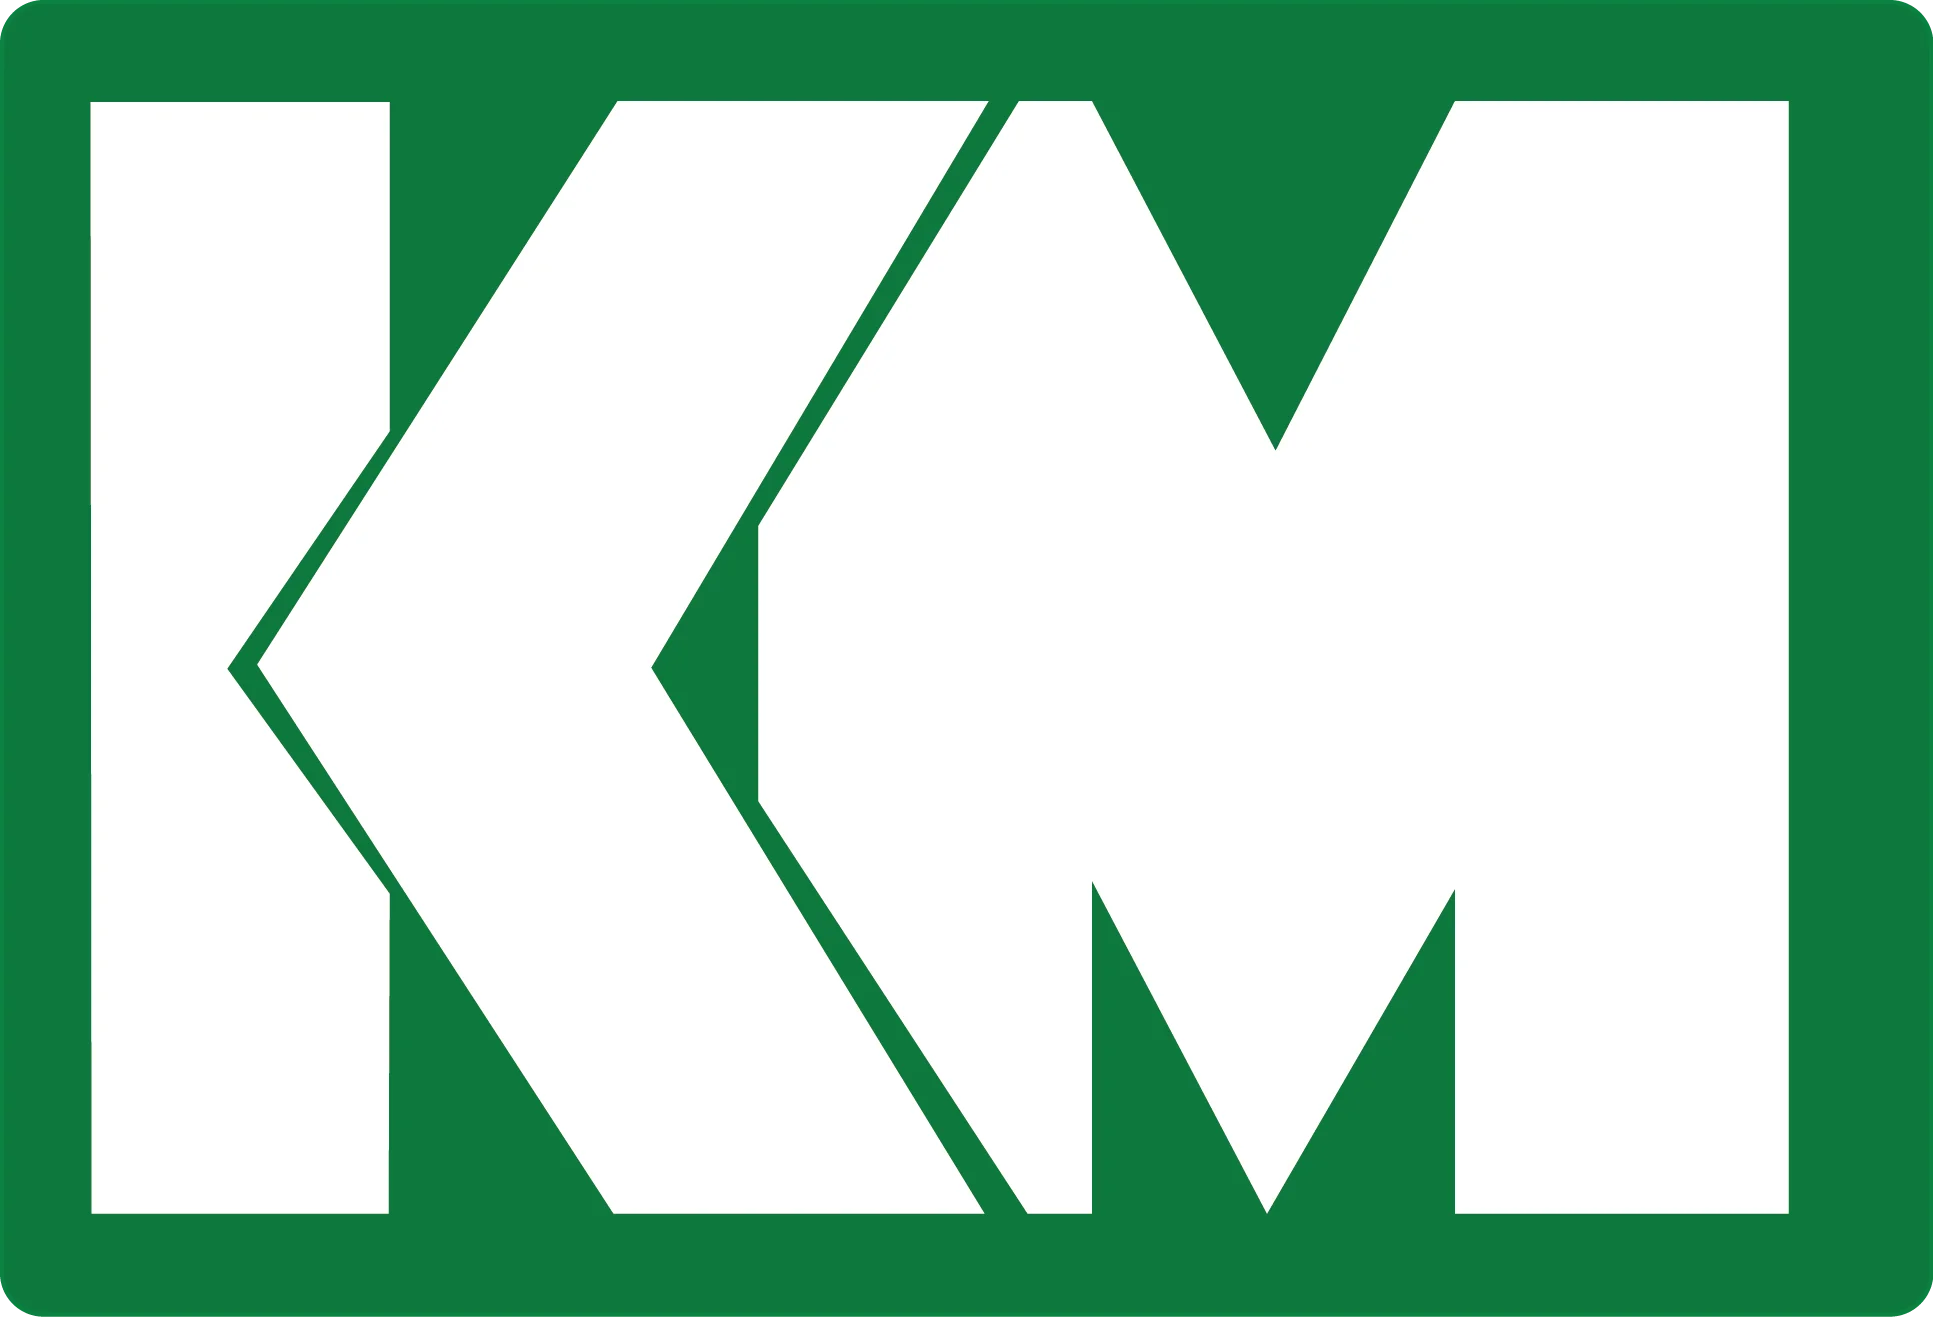 Kurt Mager GmbH